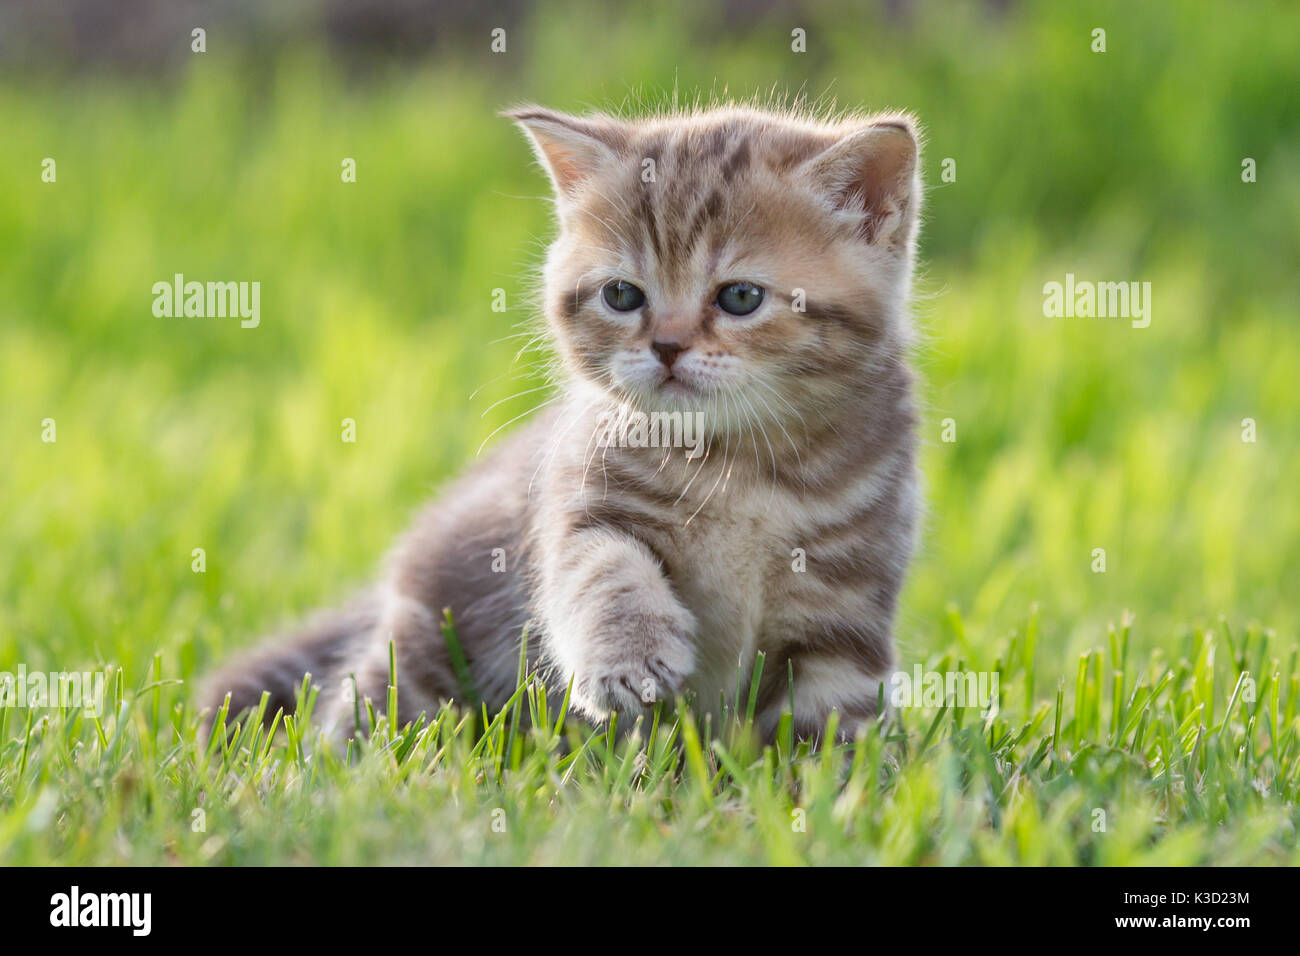 Bébé chat ou chaton dans l'herbe verte Banque D'Images